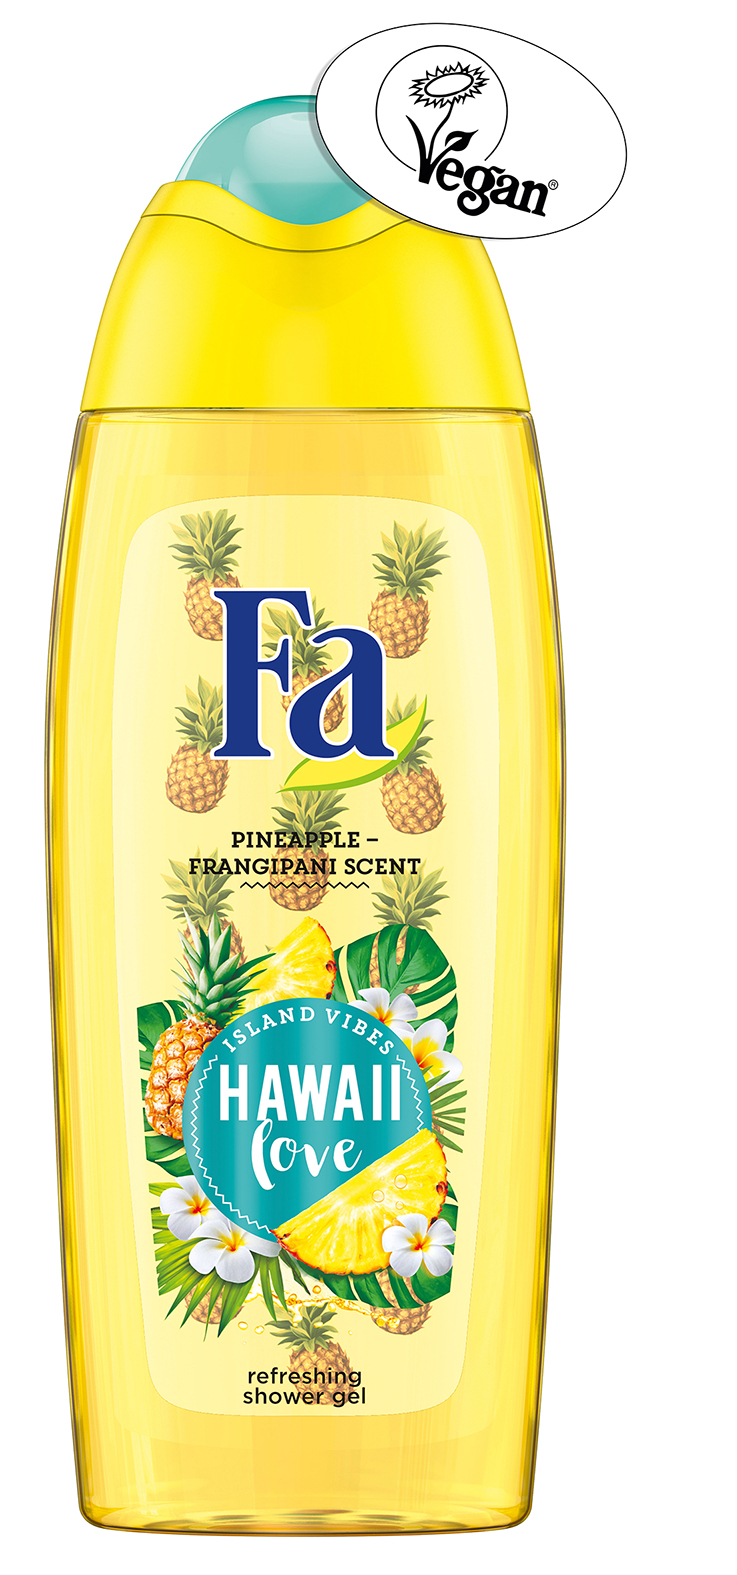 FA ISLAND VIBES HAWAII LOVE TUSFÜRDŐ<br /><br />Fa Island Vibes Hawaii tusfürdő az ananász és törpe hawaii rózsa frissítő tengerparti illatával. <br />A gyengéd formula összetevőinek köszönhetően könnyen habzik és kellemesen lágy érzetet kölcsönöz a bőrnek. PH bőrsemleges. Igazoltan bőrbarát.<br /><br />Vegán tanúsítvánnyal bíró vegán termék.<br />